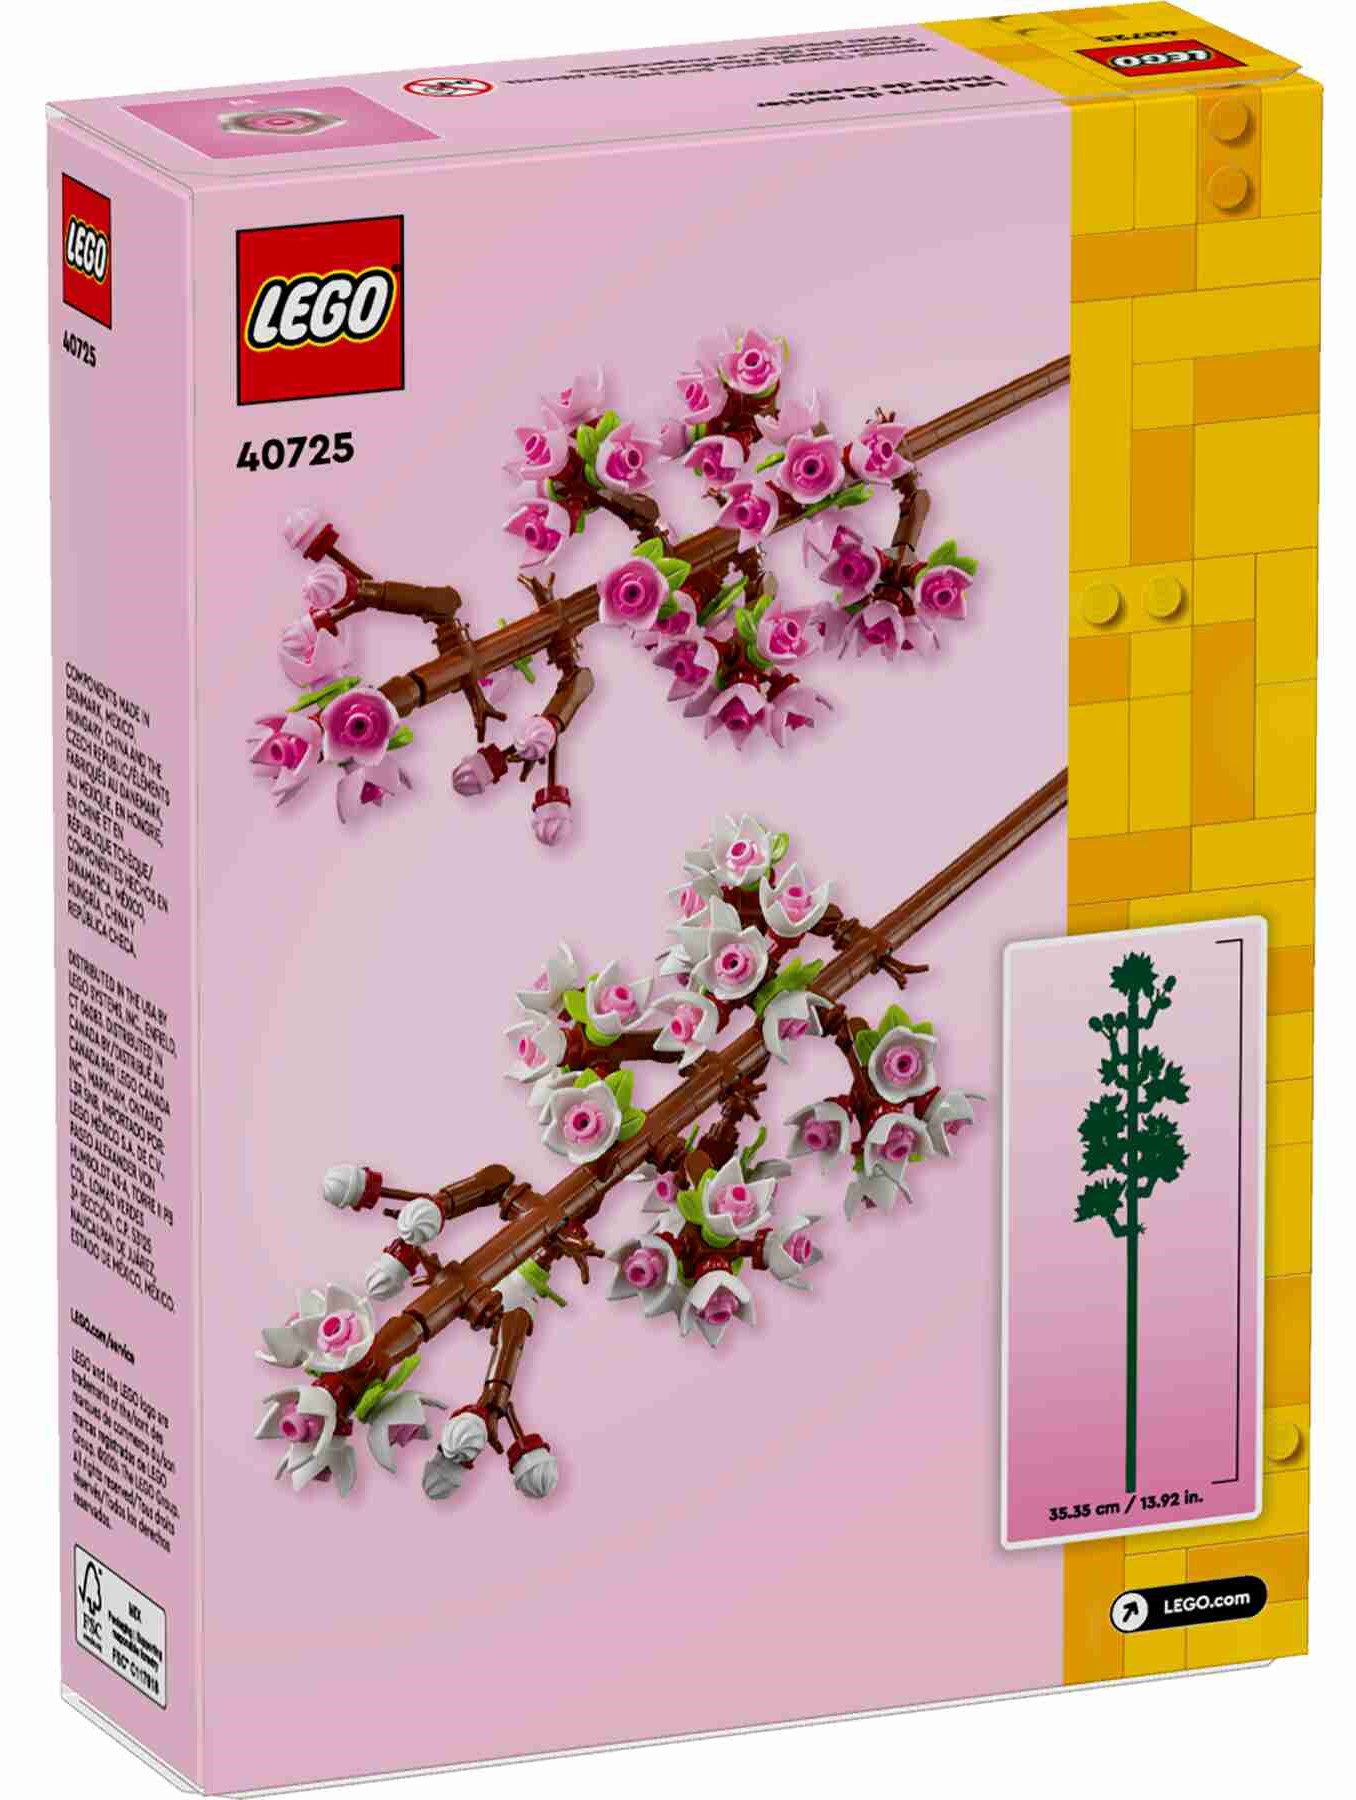 LEGO 40725 Iconic Kirschblüten, Knospen in Rosa- und Weißtönen